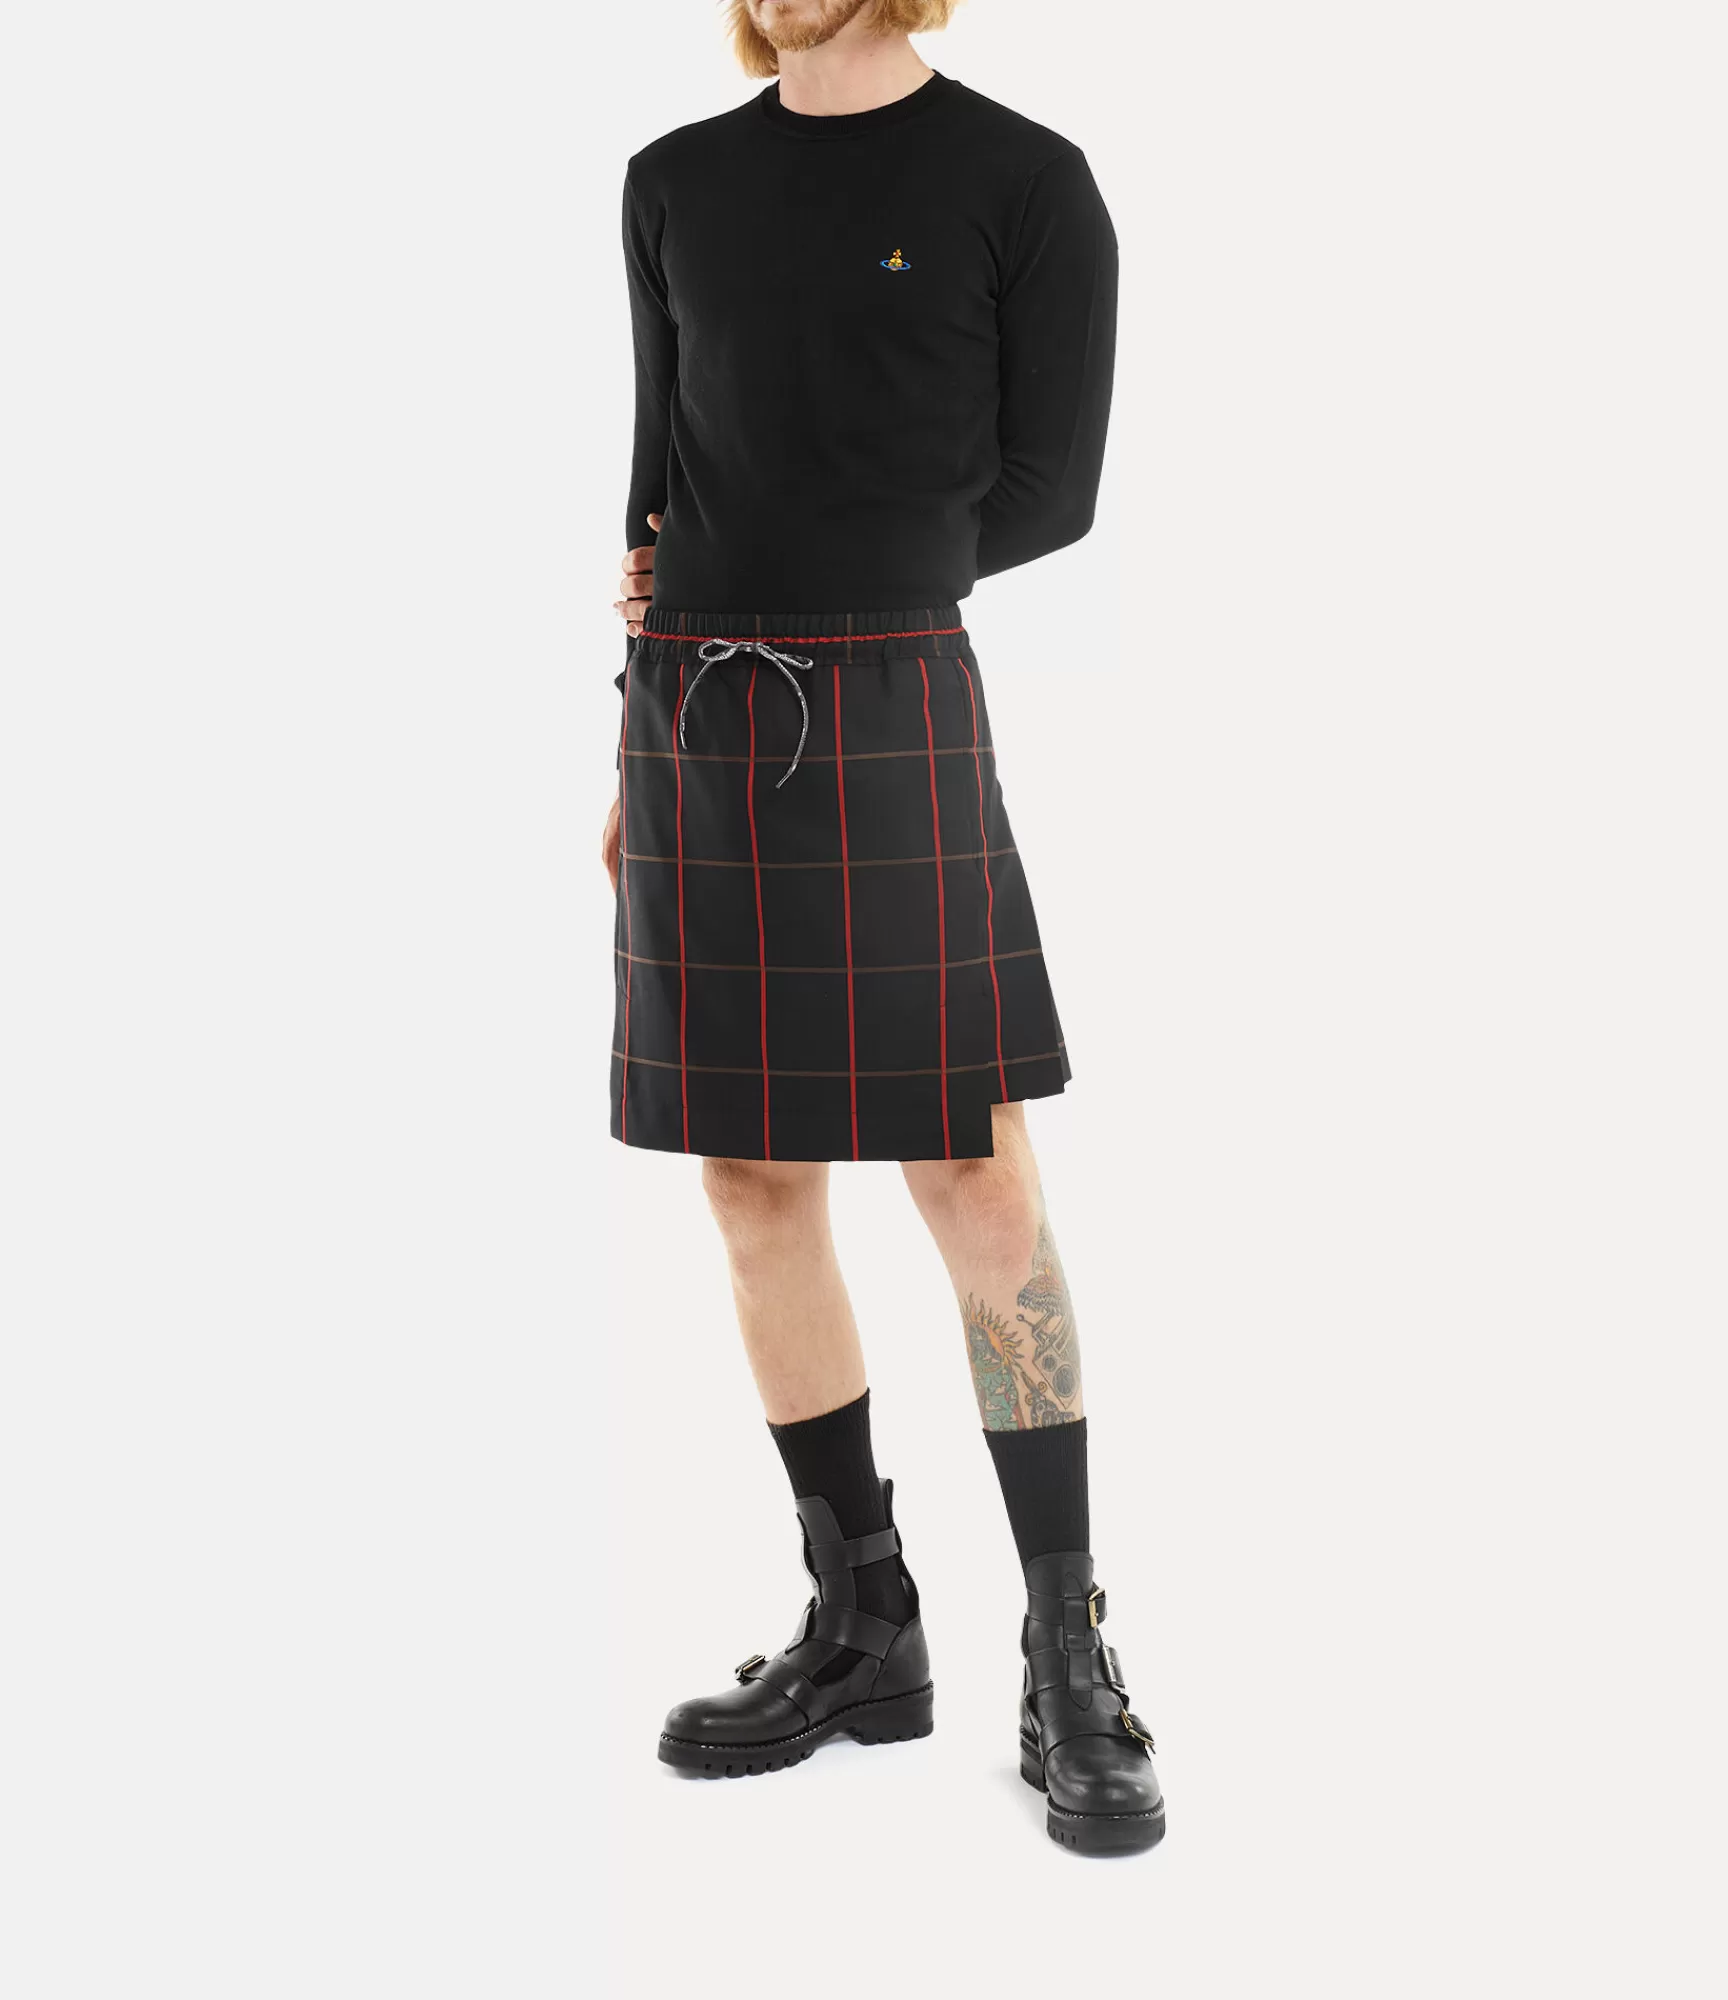 Vivienne Westwood Knitwear and Sweatshirts*Man round neck Black